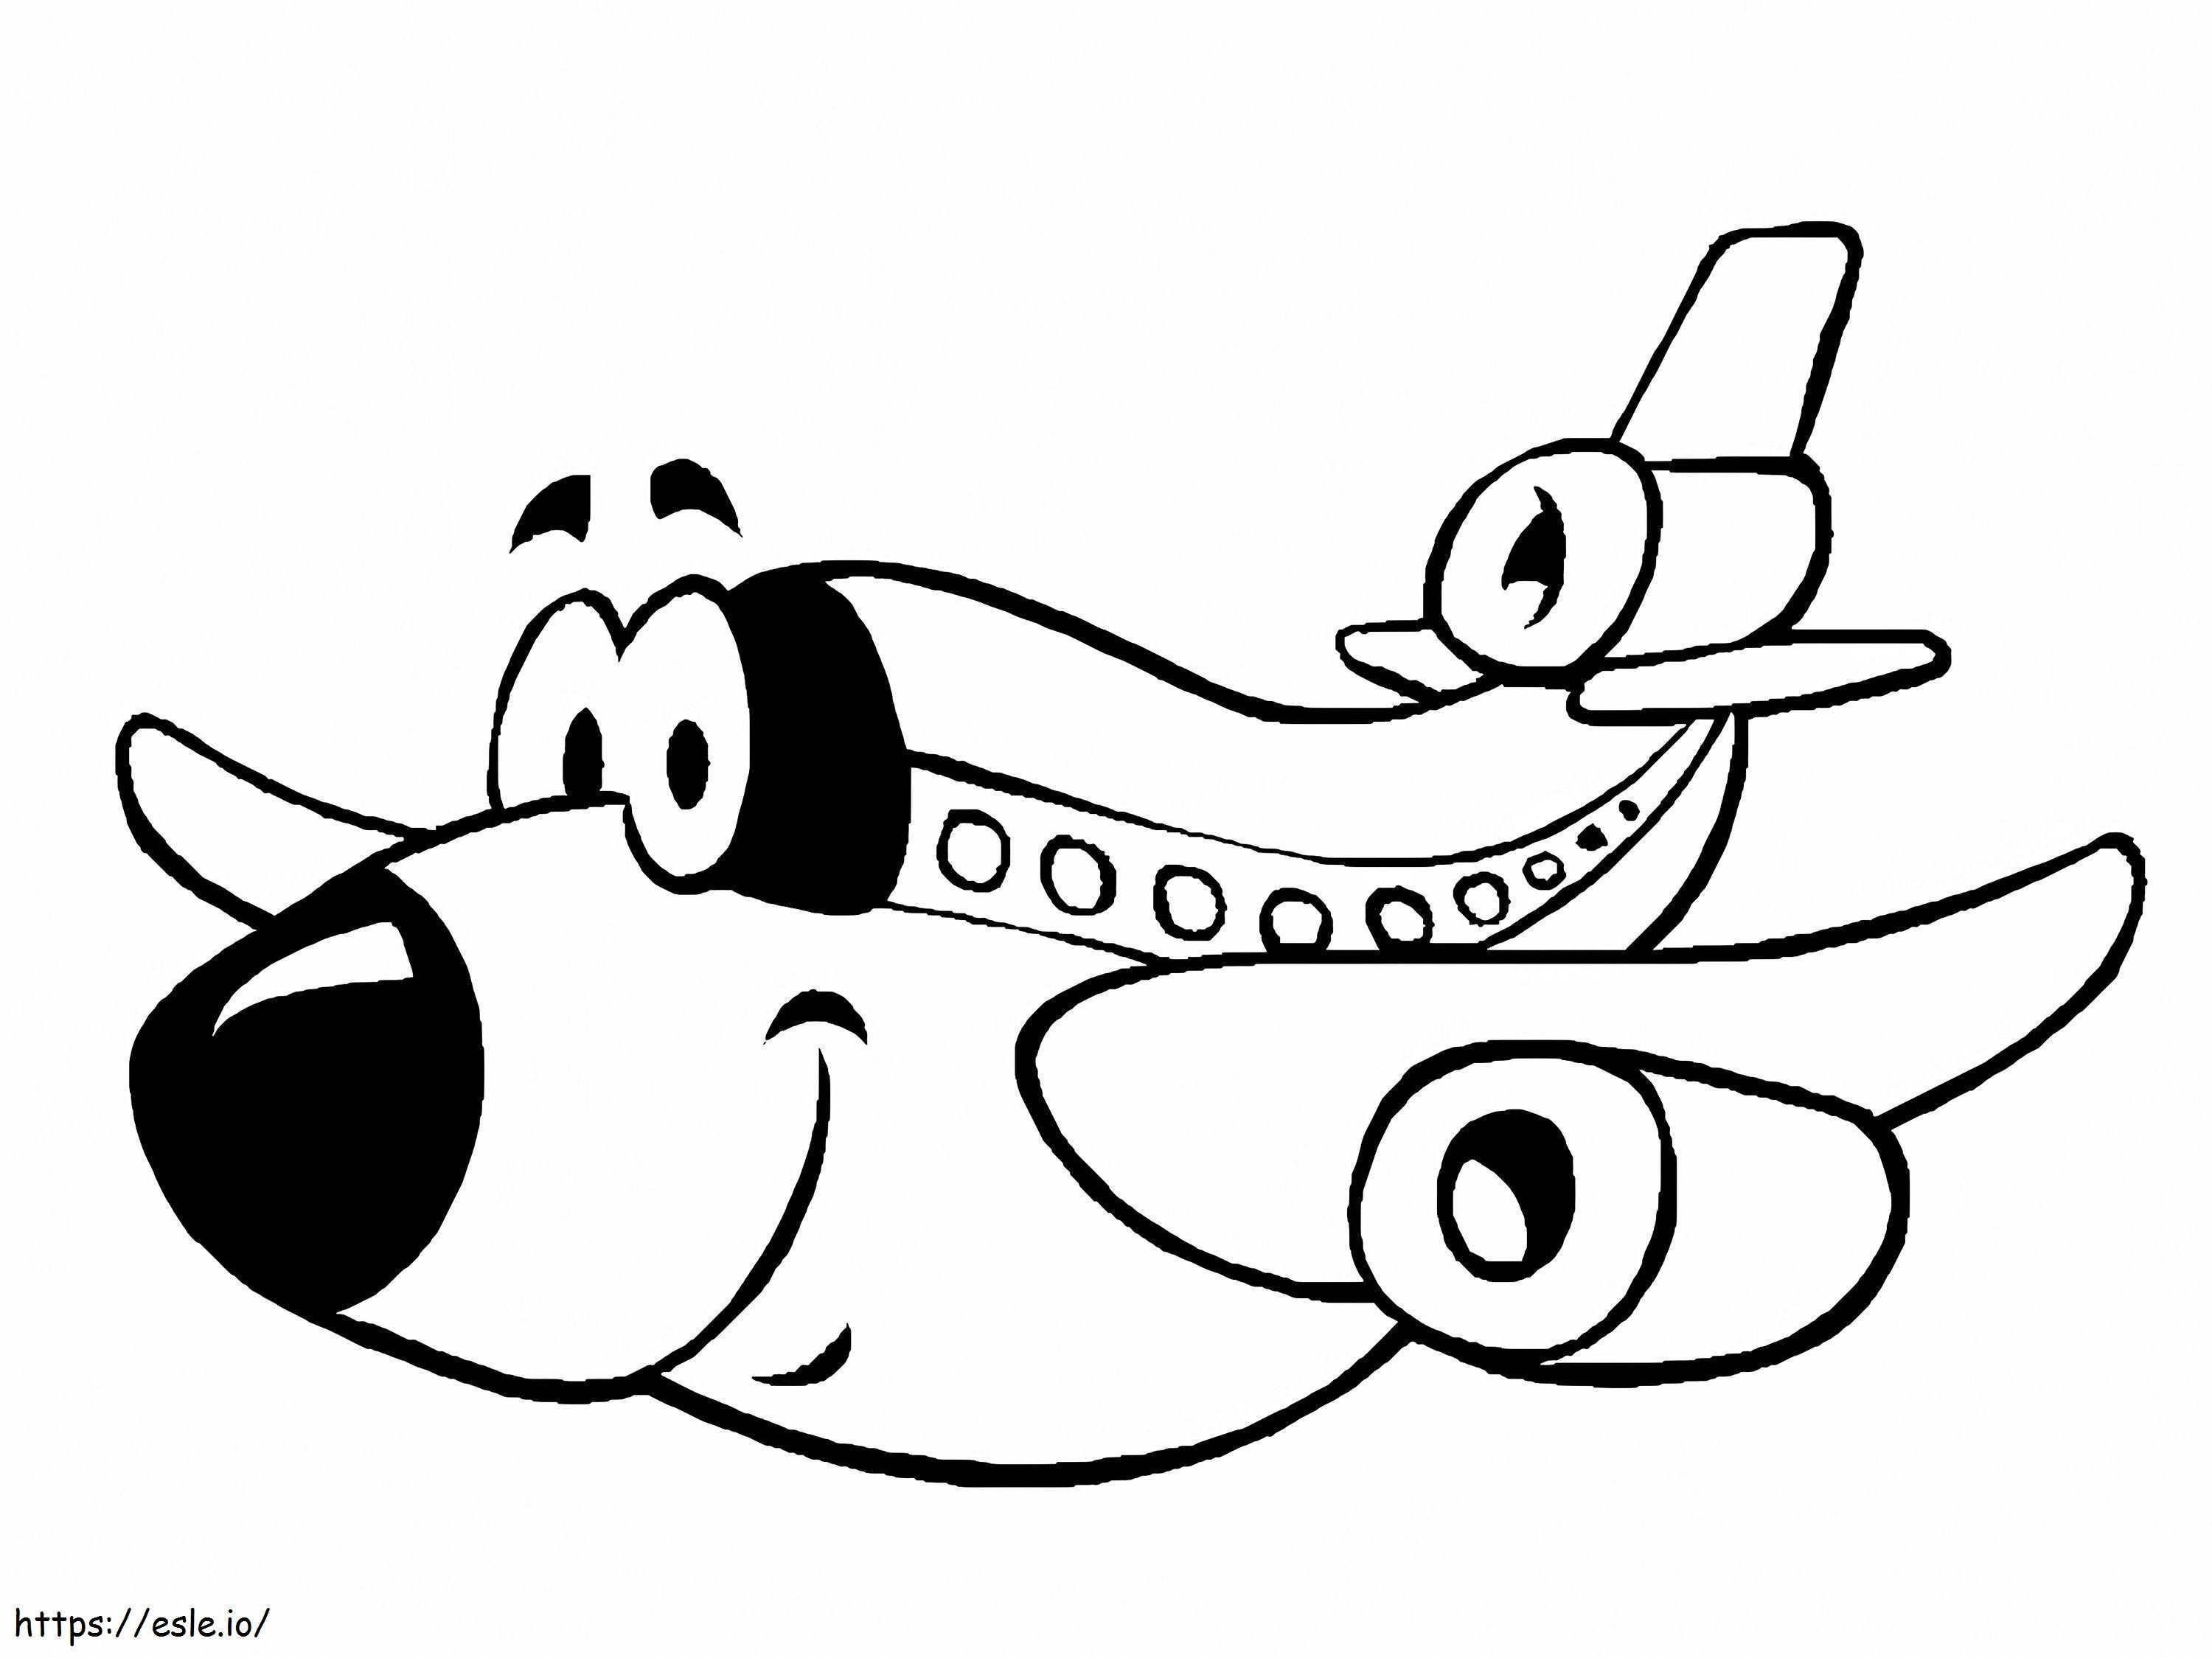  Flugzeug für Kinder ausmalbilder